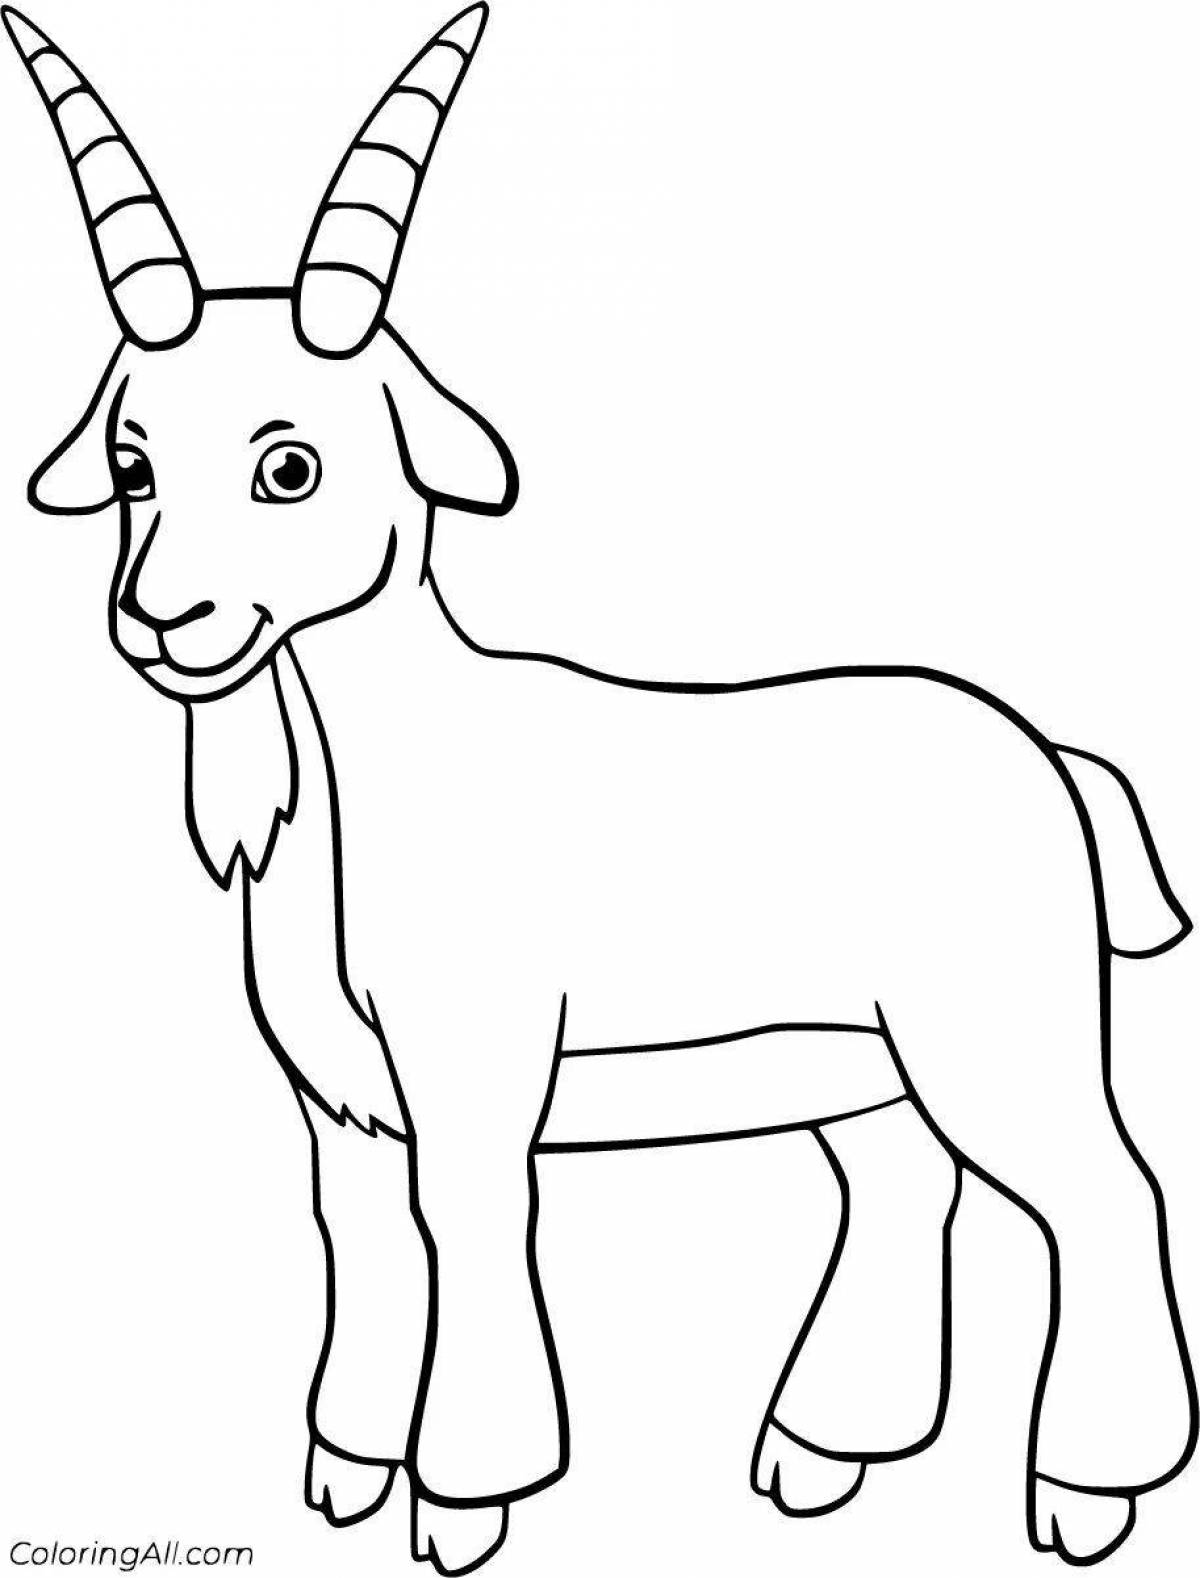 Яркая раскраска козла для детей 5-6 лет